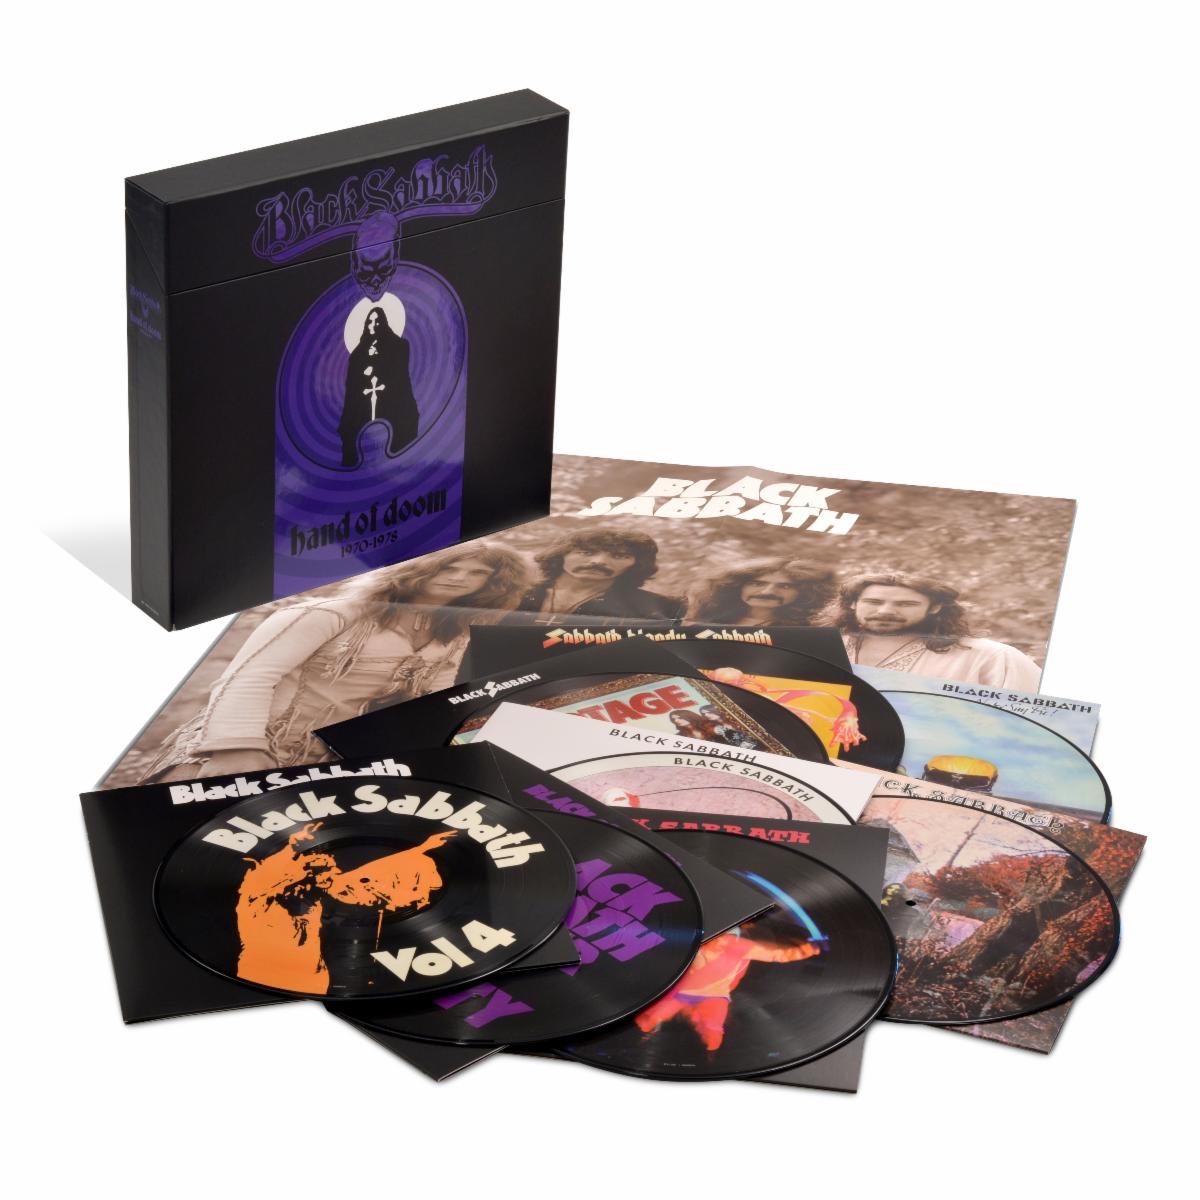 Black Sabbath vinyl